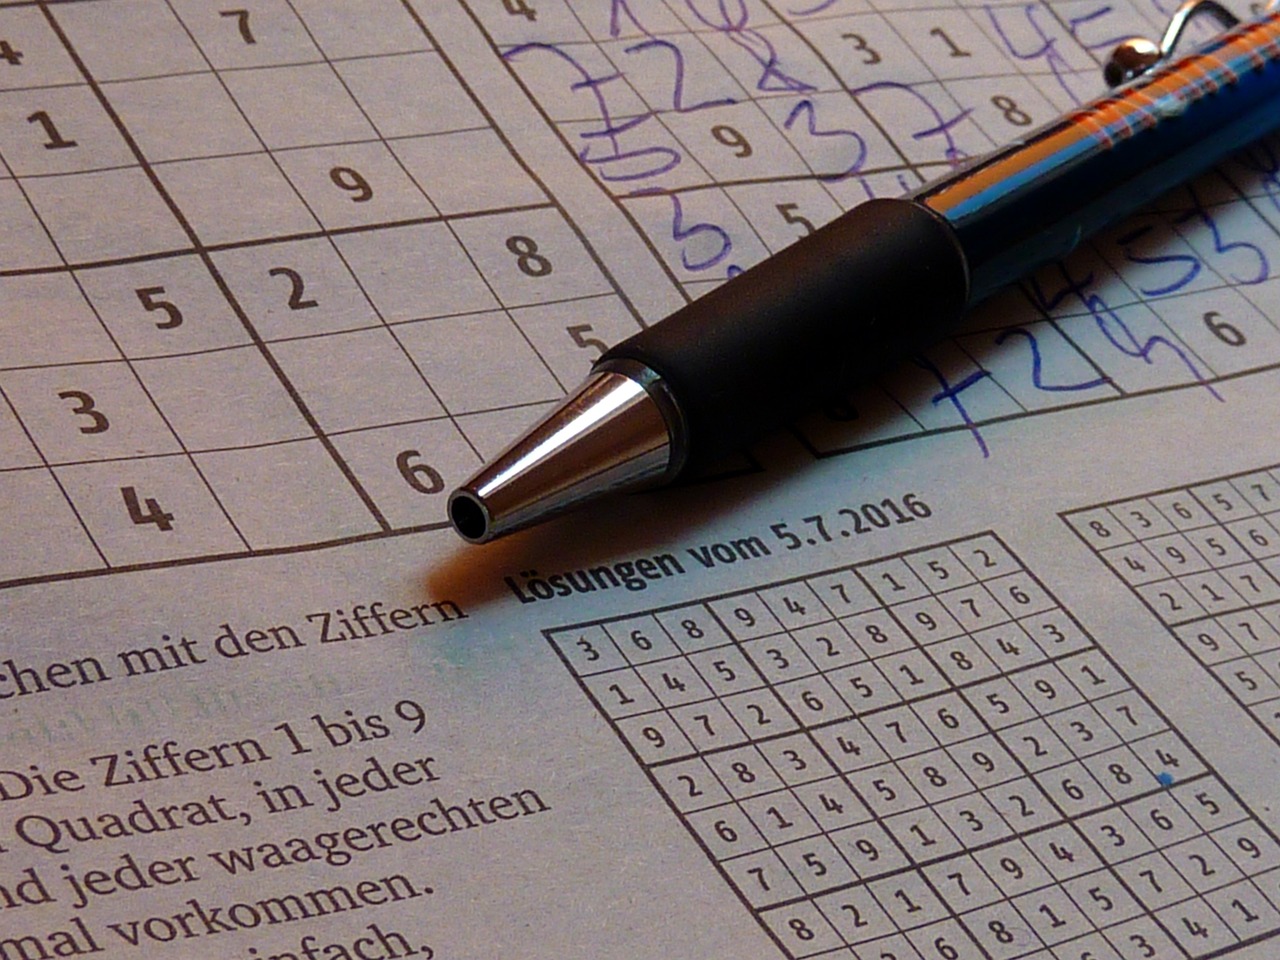 4. Gợi ý thủ thuật tiếp cận giải Sudoku hiệu quả